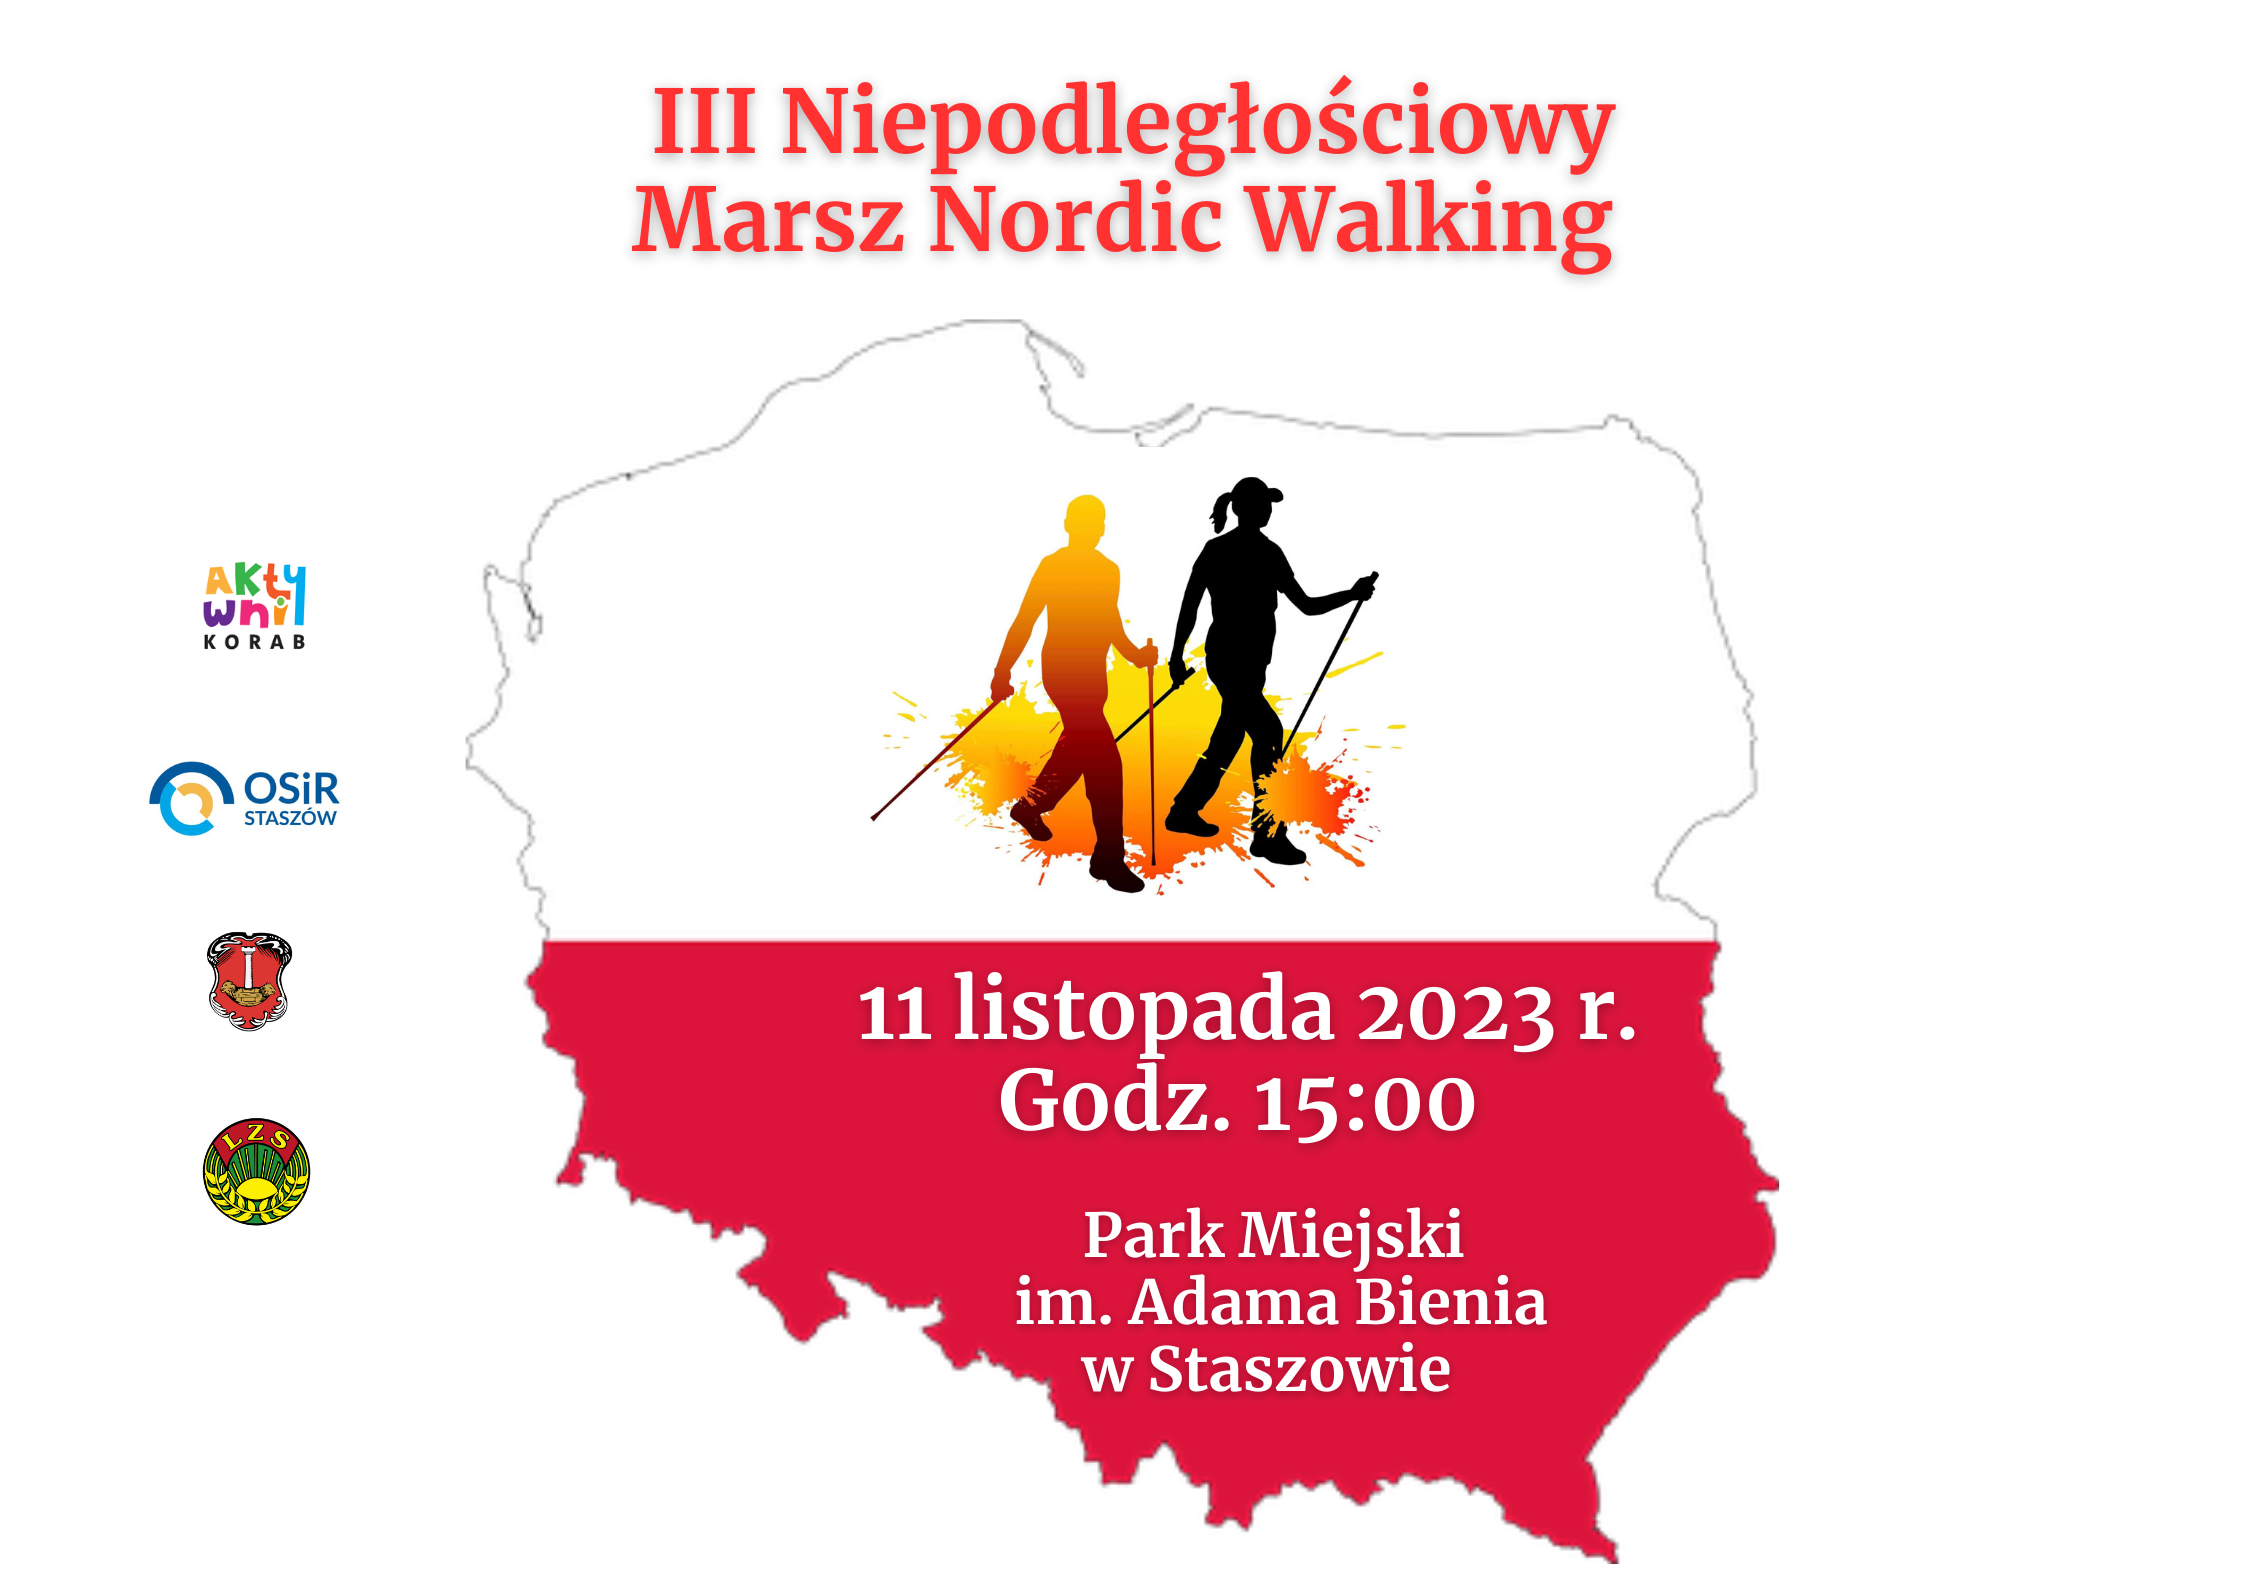 III Niepodległościowy Marsz Nordic Walking 